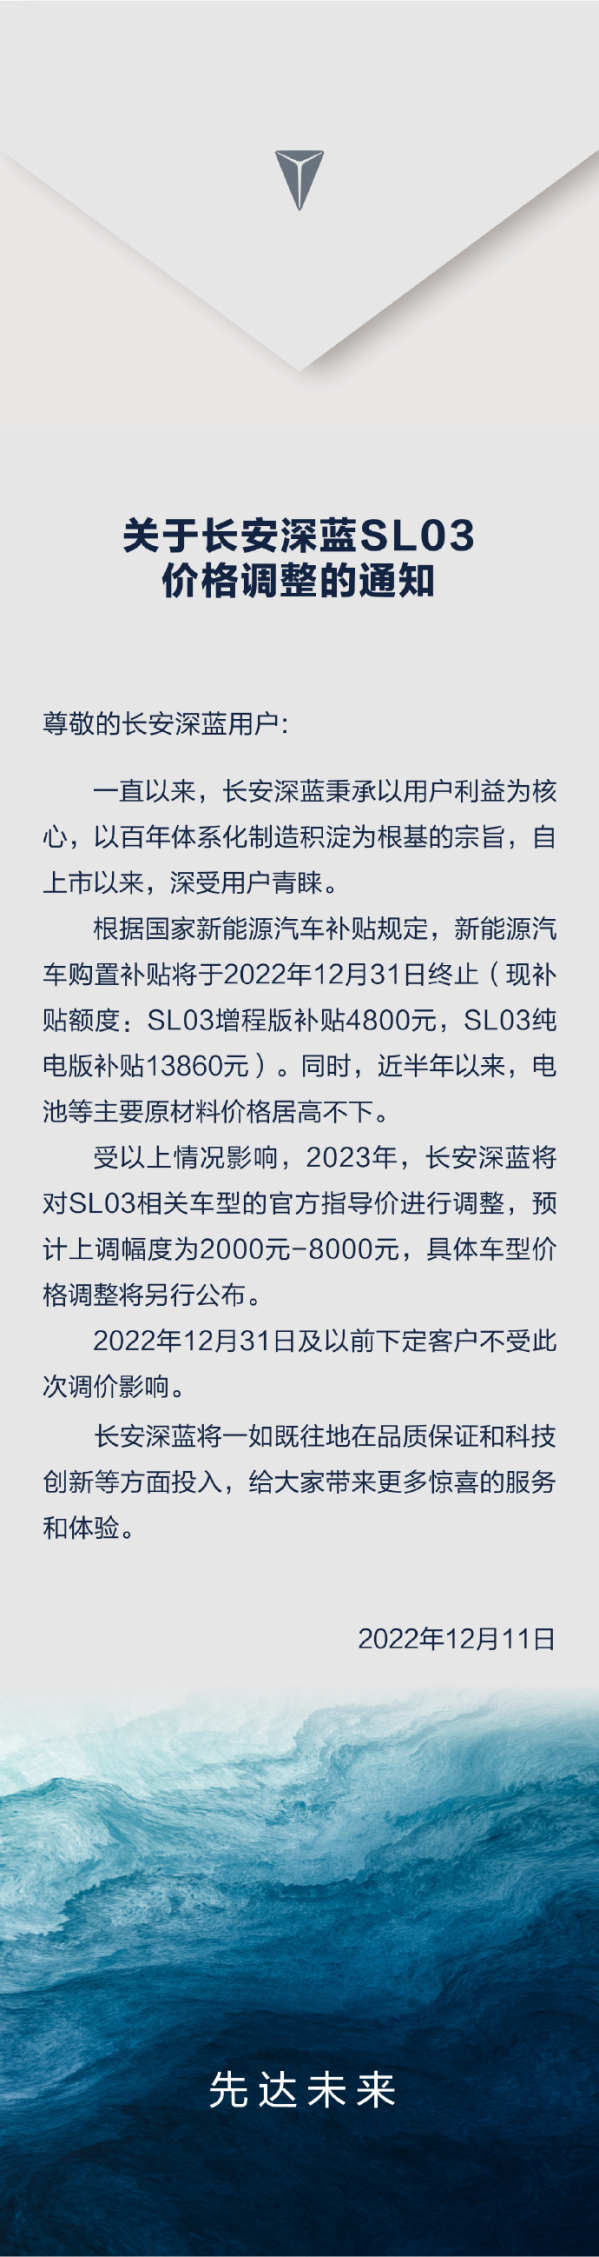 长安深蓝SL03将进行价格调整 最高涨价8000元人民币